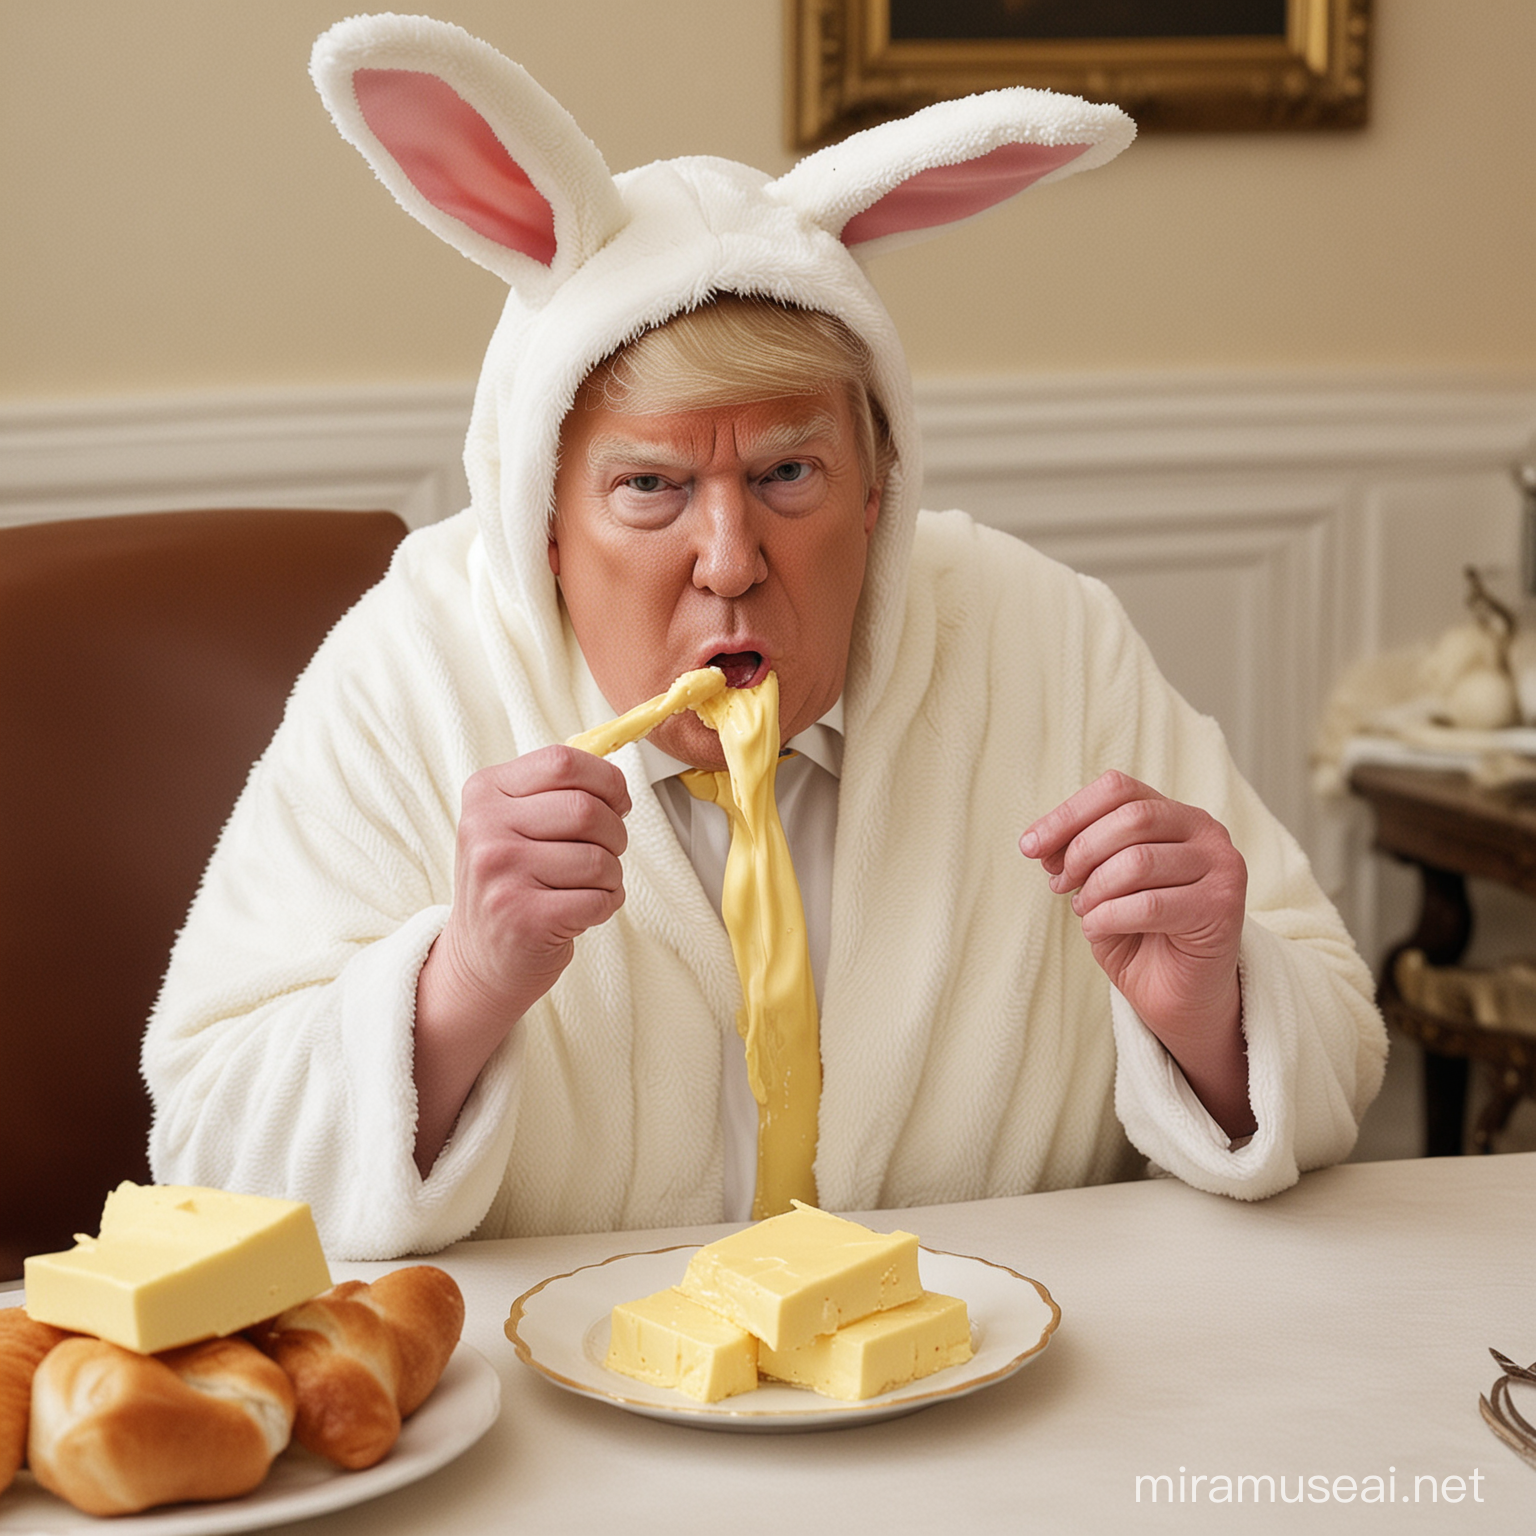 Donald Trump im Hasenkostüm verspeist einen Batzen Butter